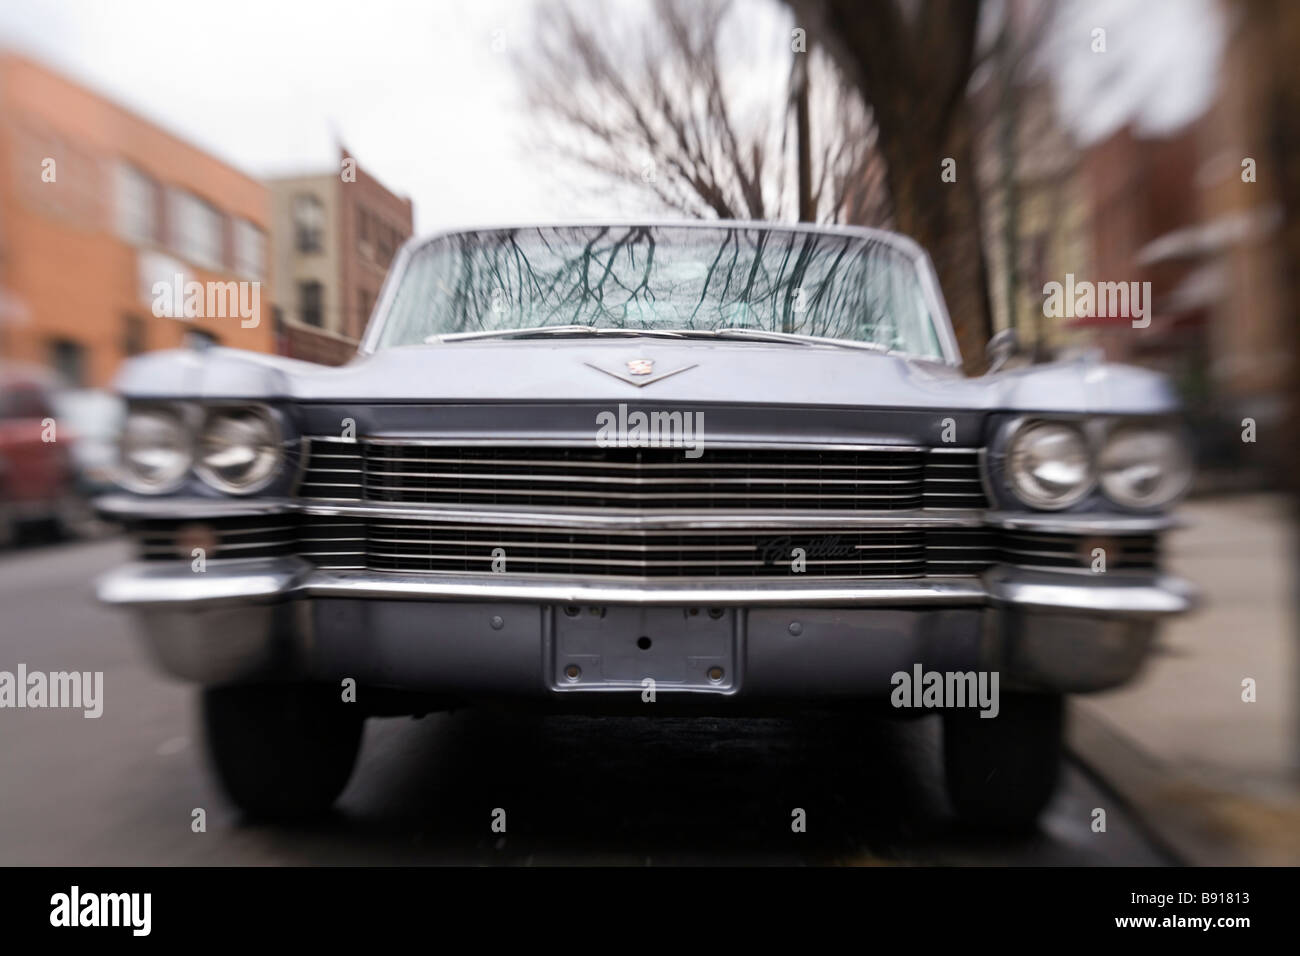 Un viejo Cadillac estacionado en la calle Foto de stock